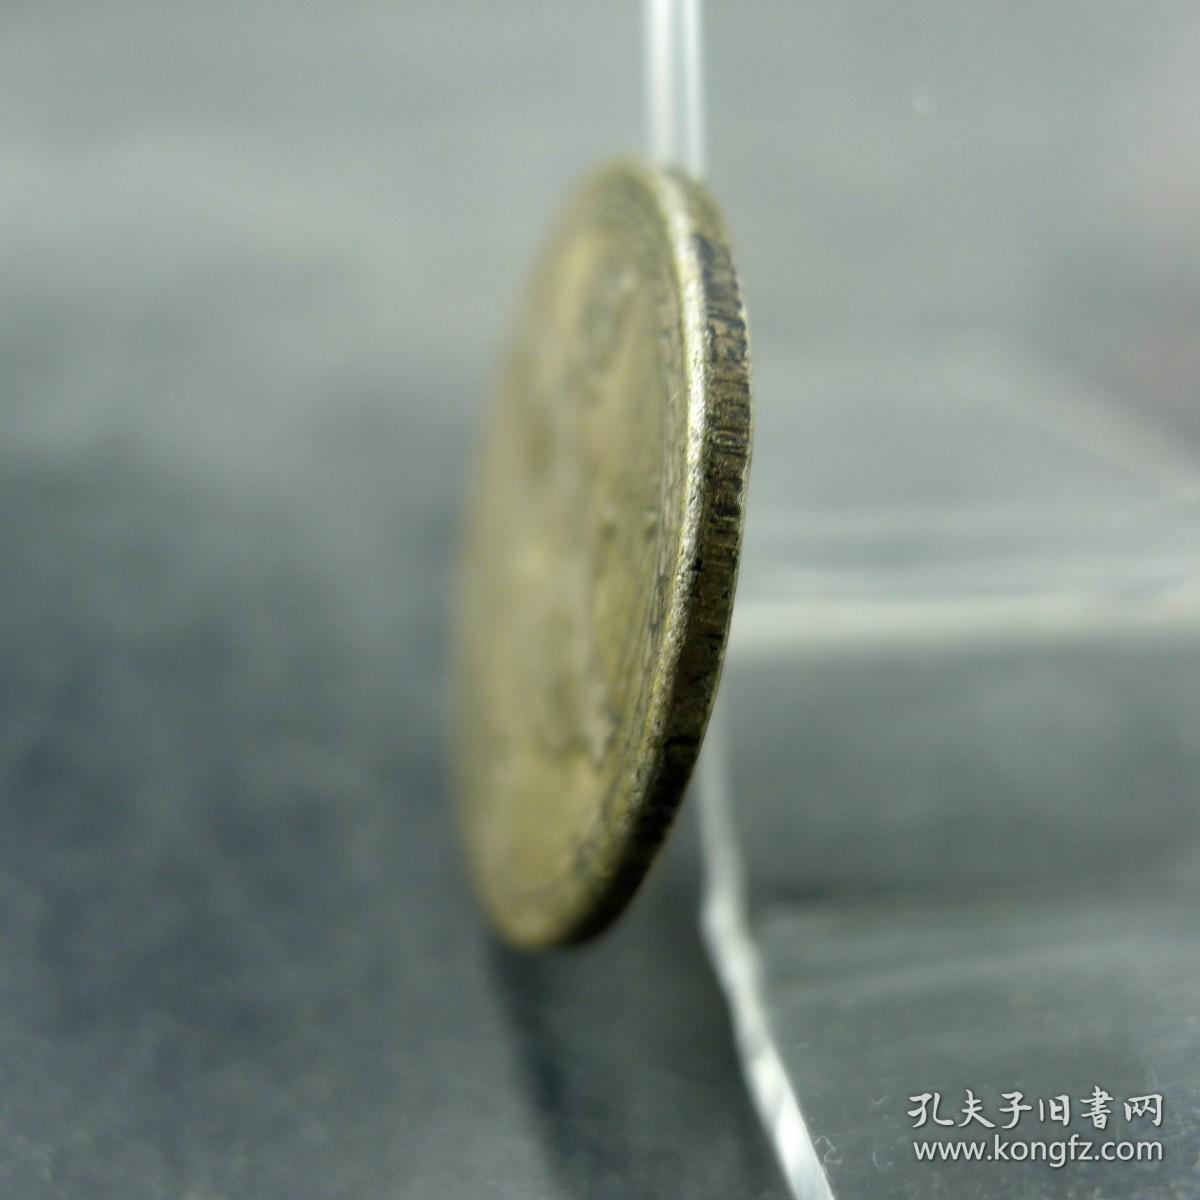 民国三十八年孙像台湾省地图伍角银币民国机制银币收藏保真保老